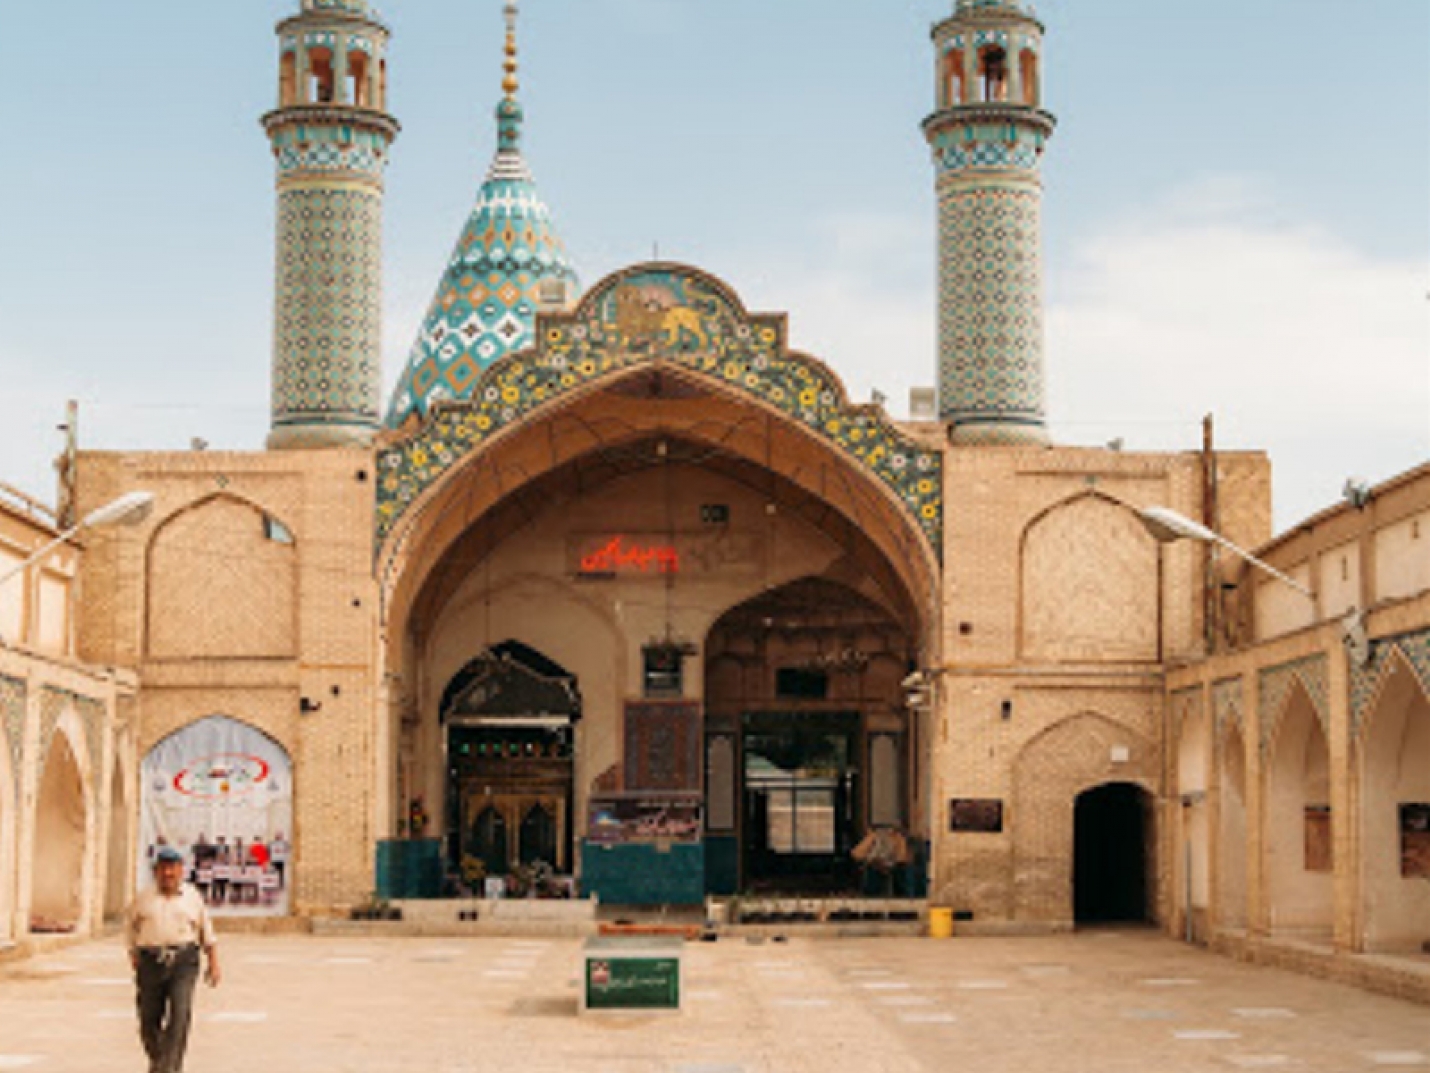 Sultan Amir Ahmad Holy Shrine